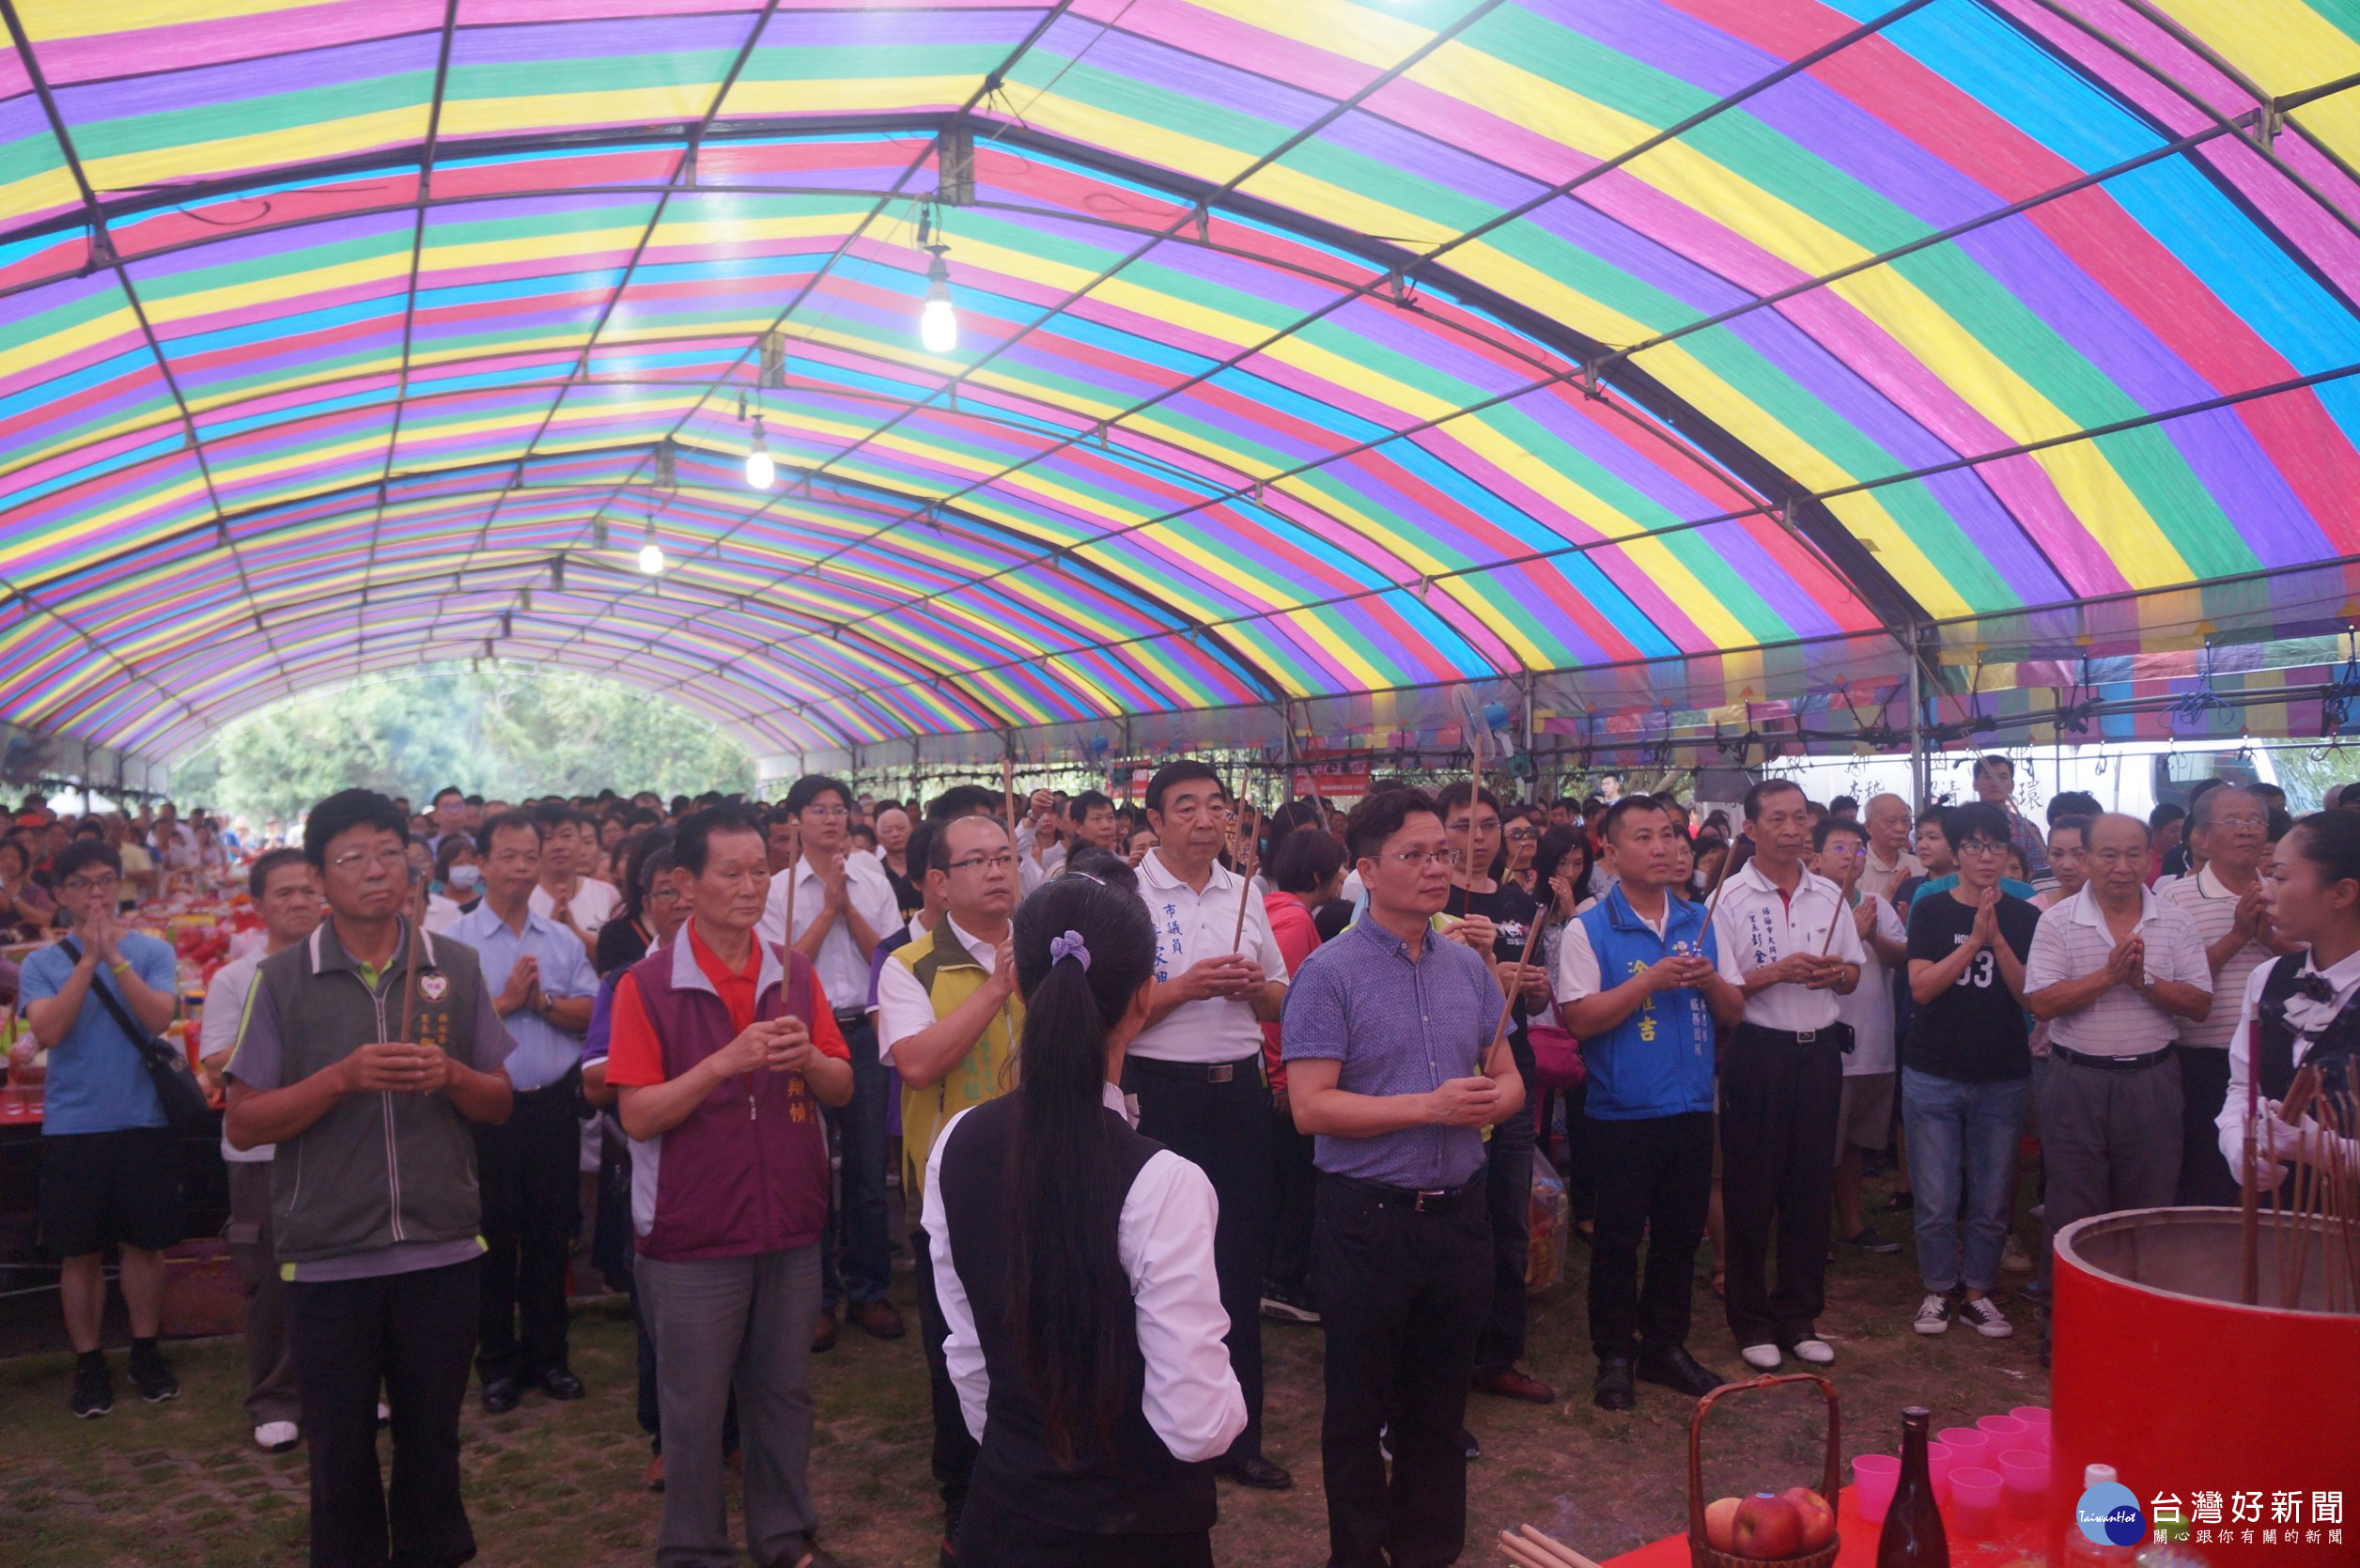 祭典儀式由楊梅區公所姚敦明區長主祭。 